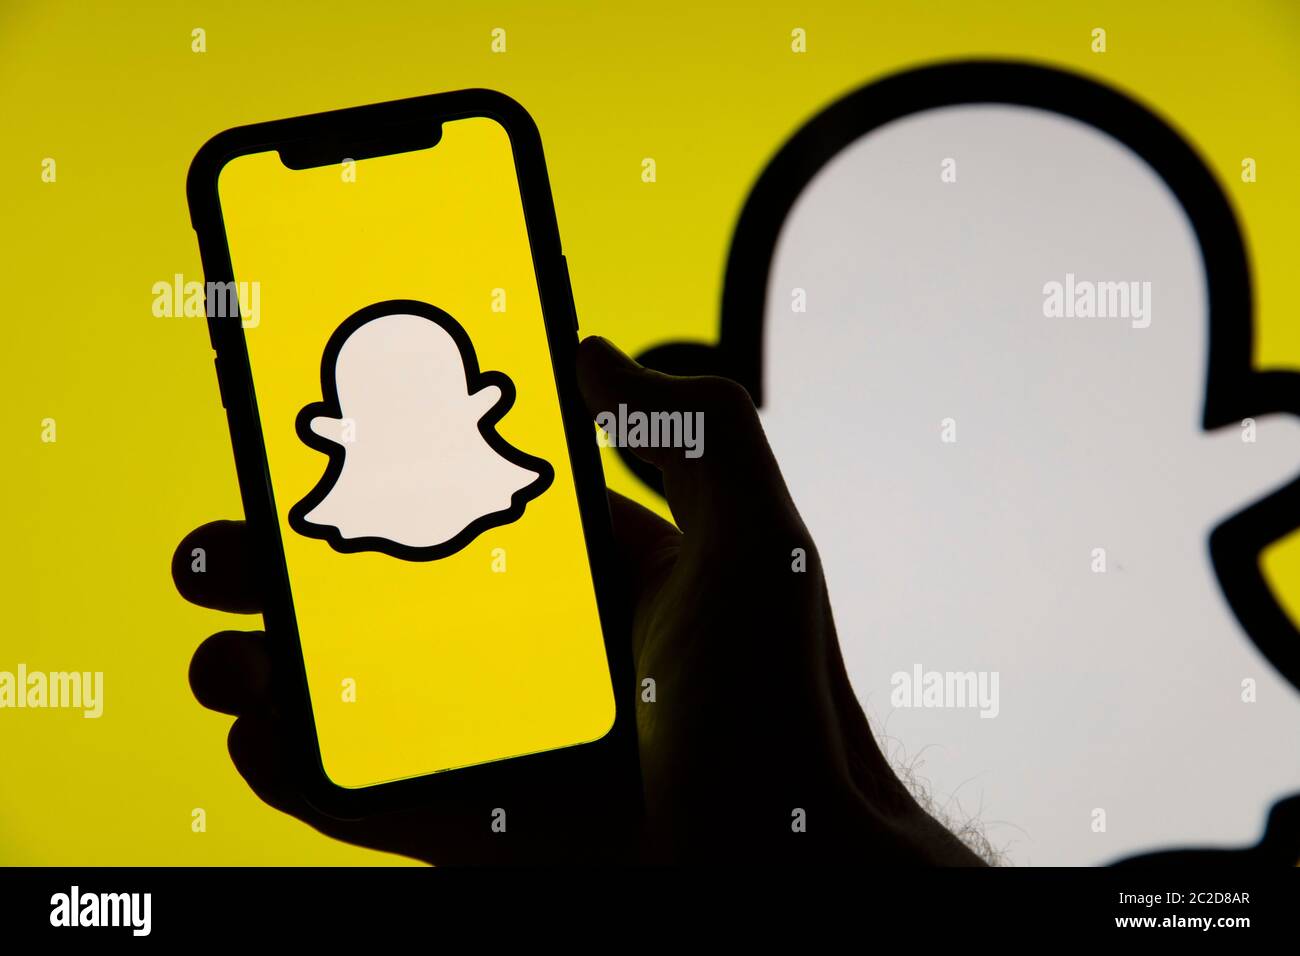 LONDRA, UK - GIUGNO 2020: Logo Snapchat sui social media sullo schermo di uno smartphone Foto Stock